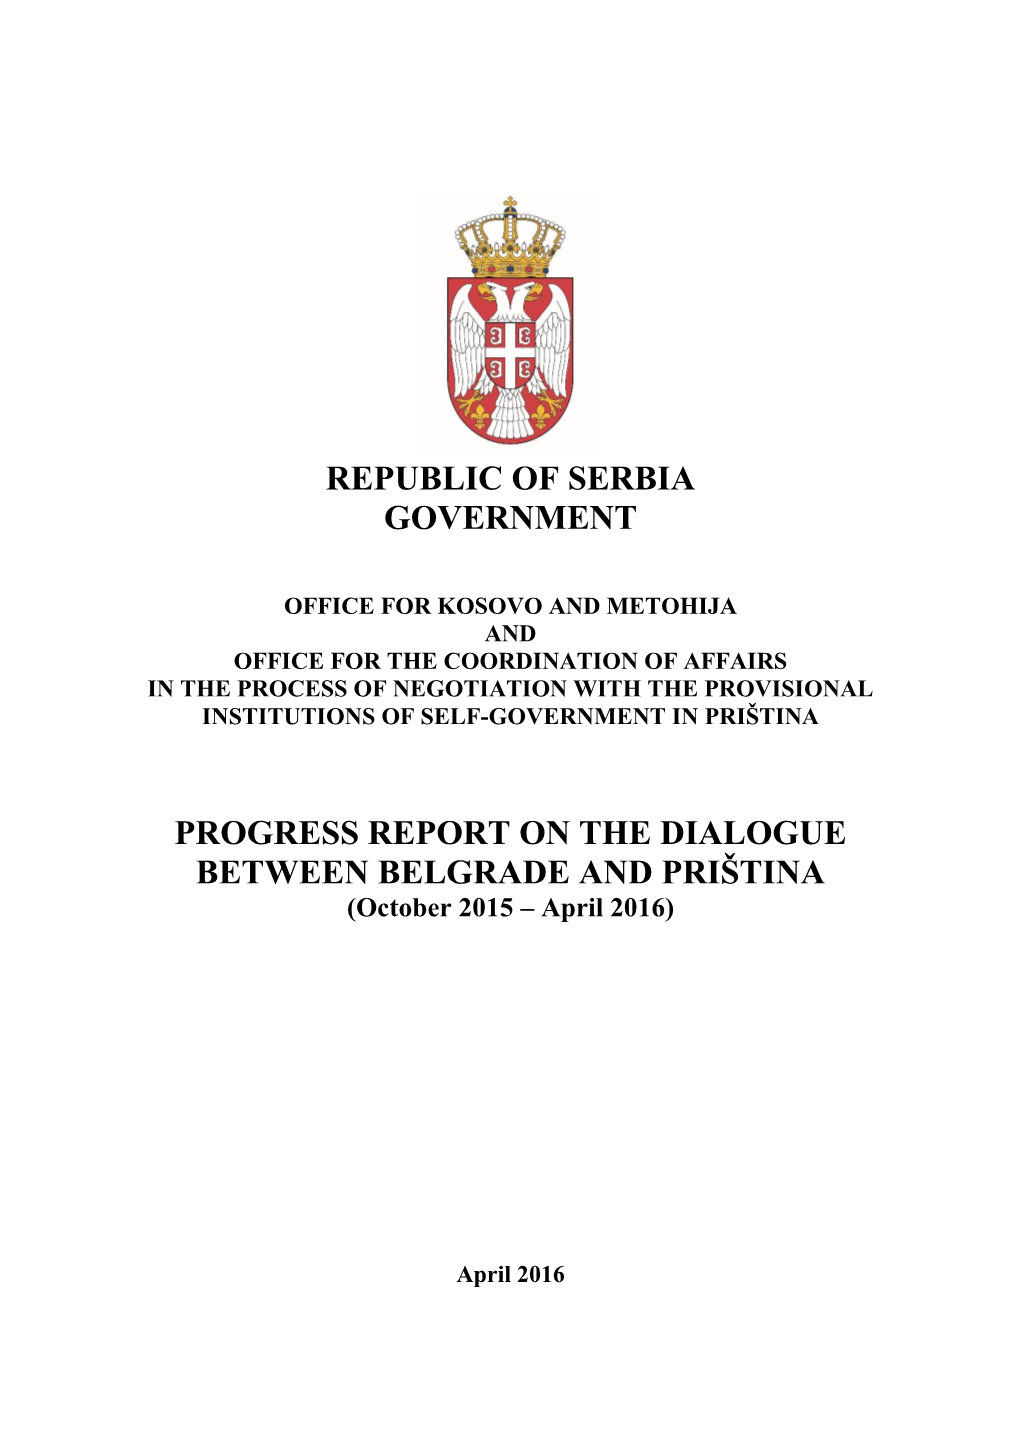 Republic of Serbia Government Progress